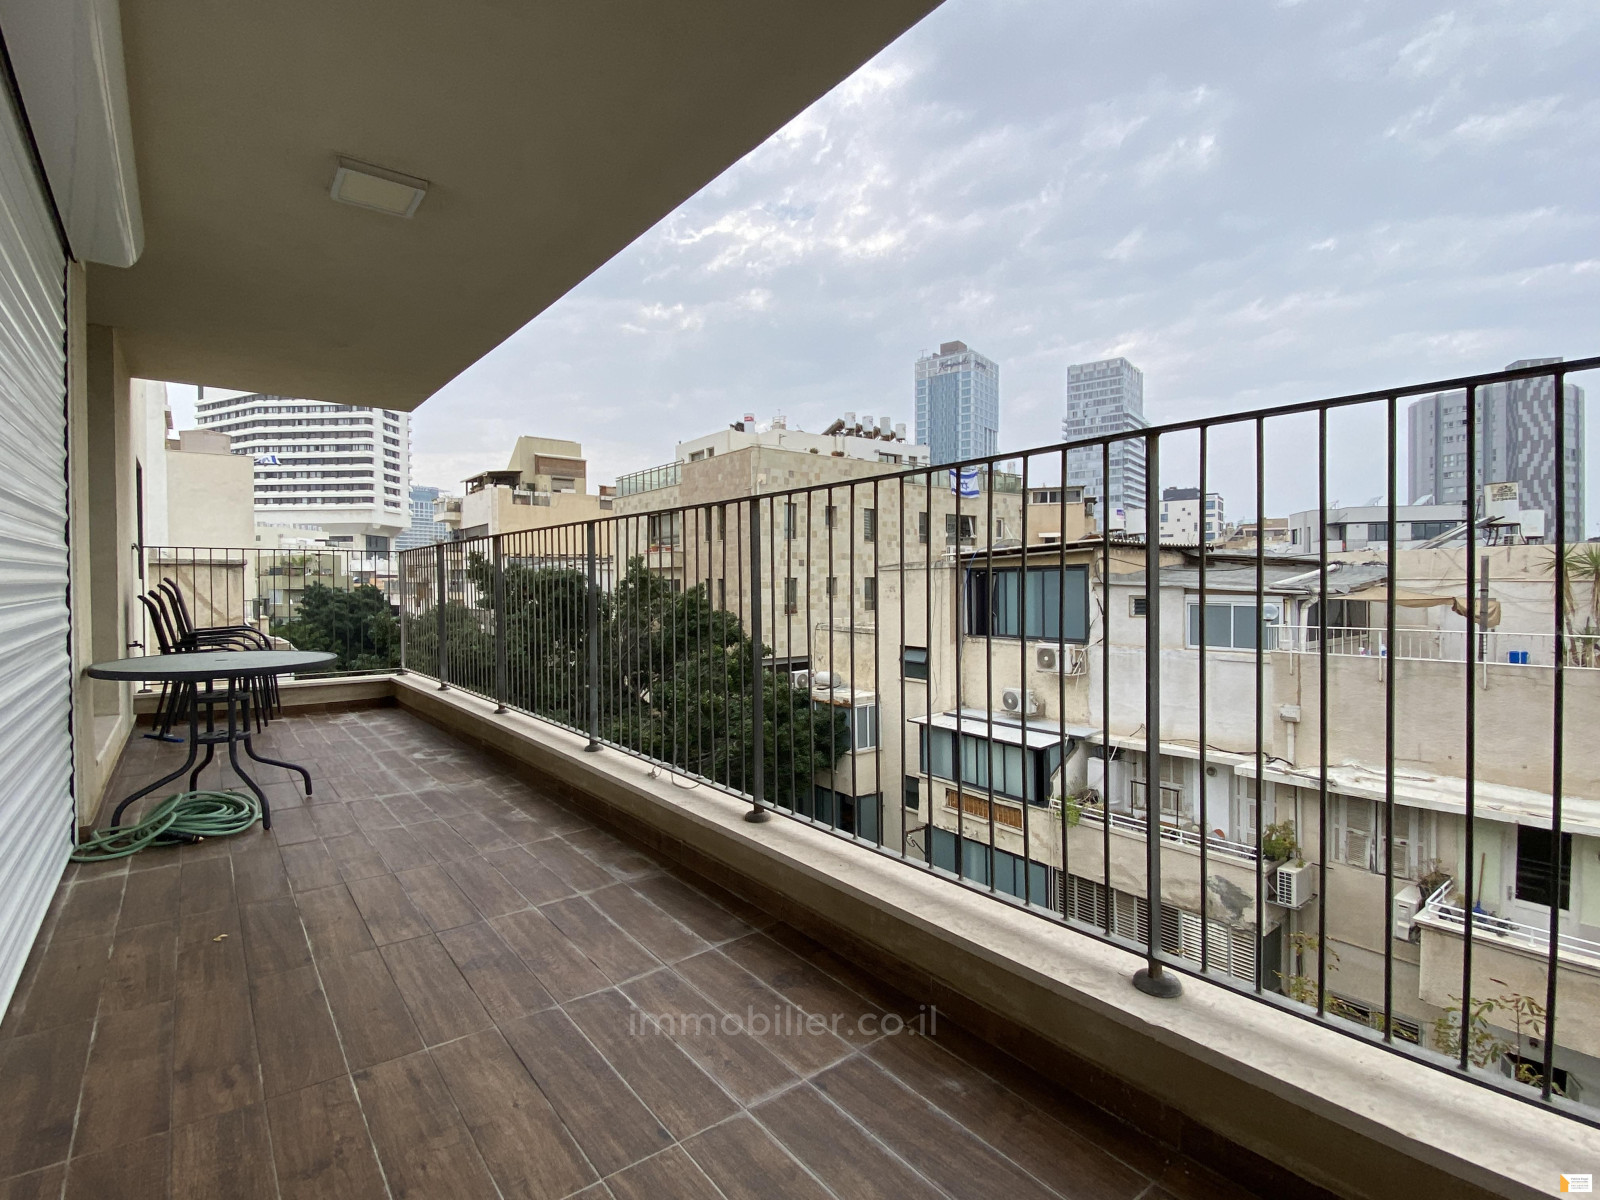 Appartement 5 pièces Tel Aviv quart de la mer 232-IBL-3749